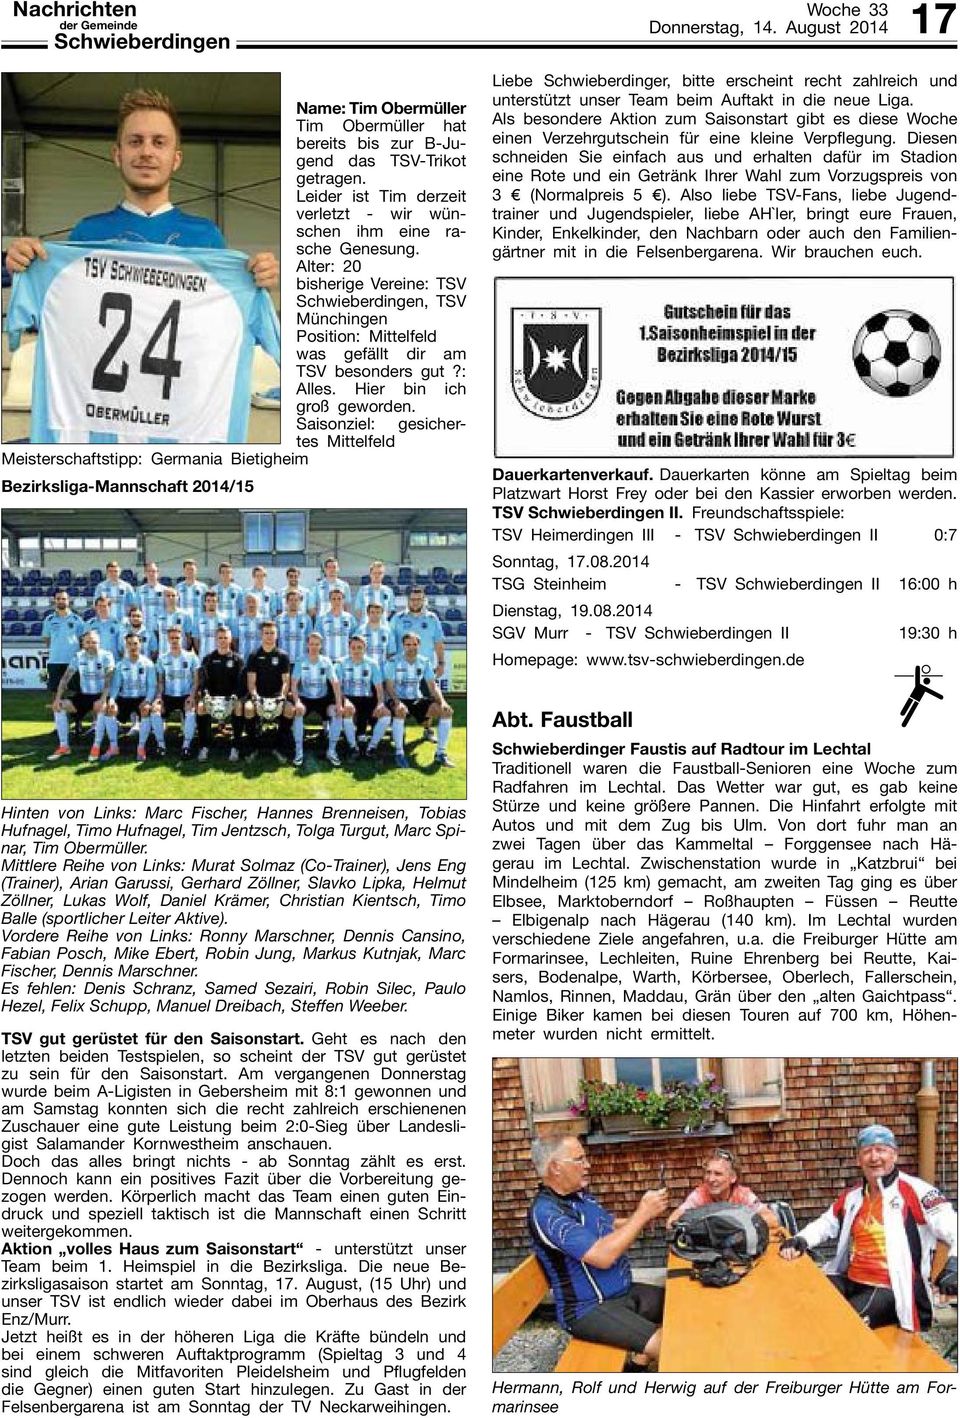 Saisonziel: gesichertes Mittelfeld Meisterschaftstipp: Germania Bietigheim Bezirksliga-Mannschaft 2014/15 Donnerstag, 14.